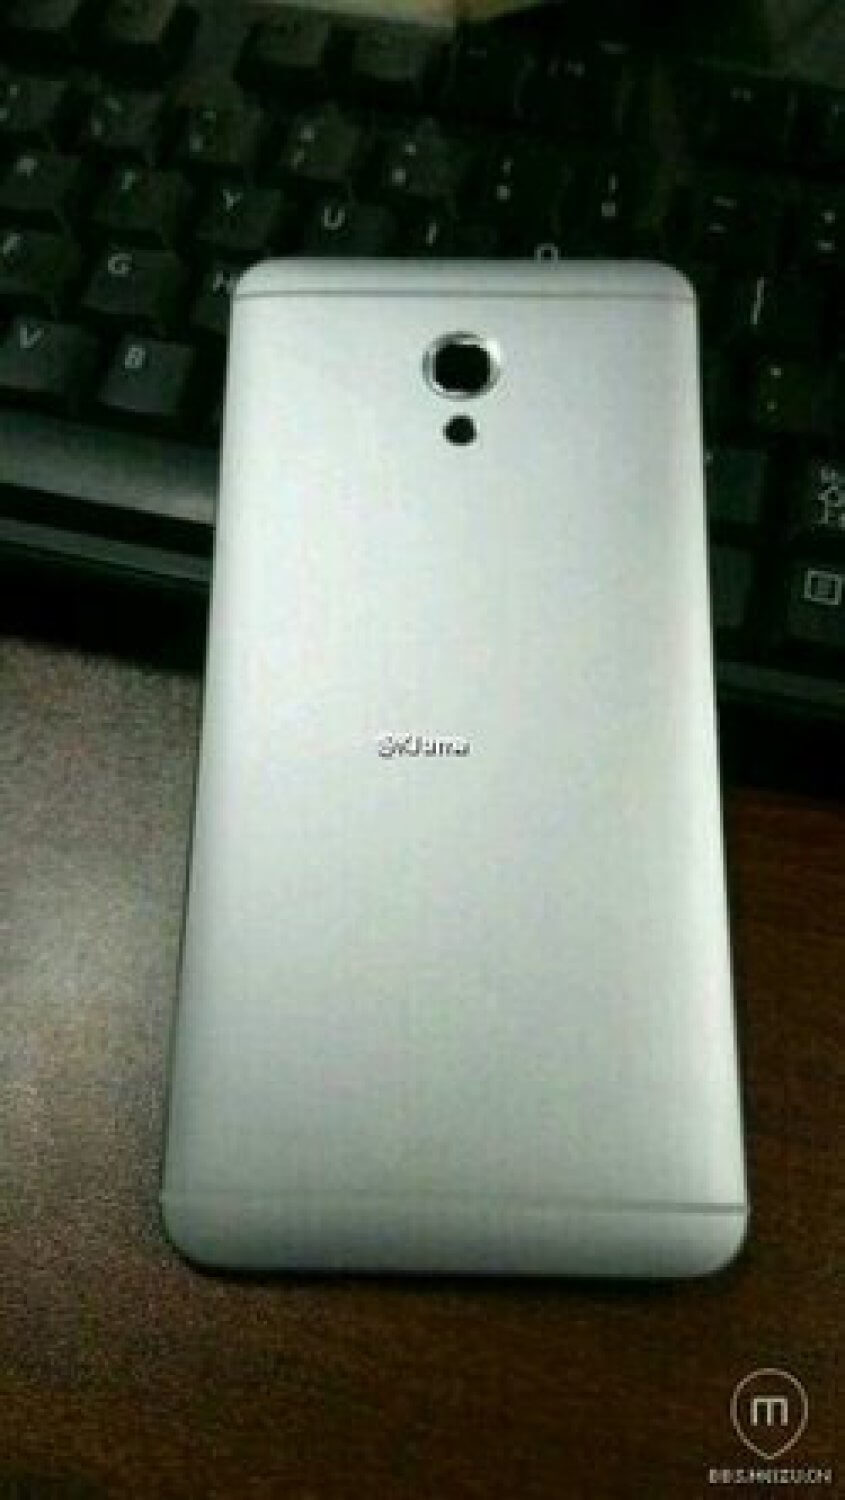 Снимок нового смартфона от Meizu попал в Сеть. Фото.